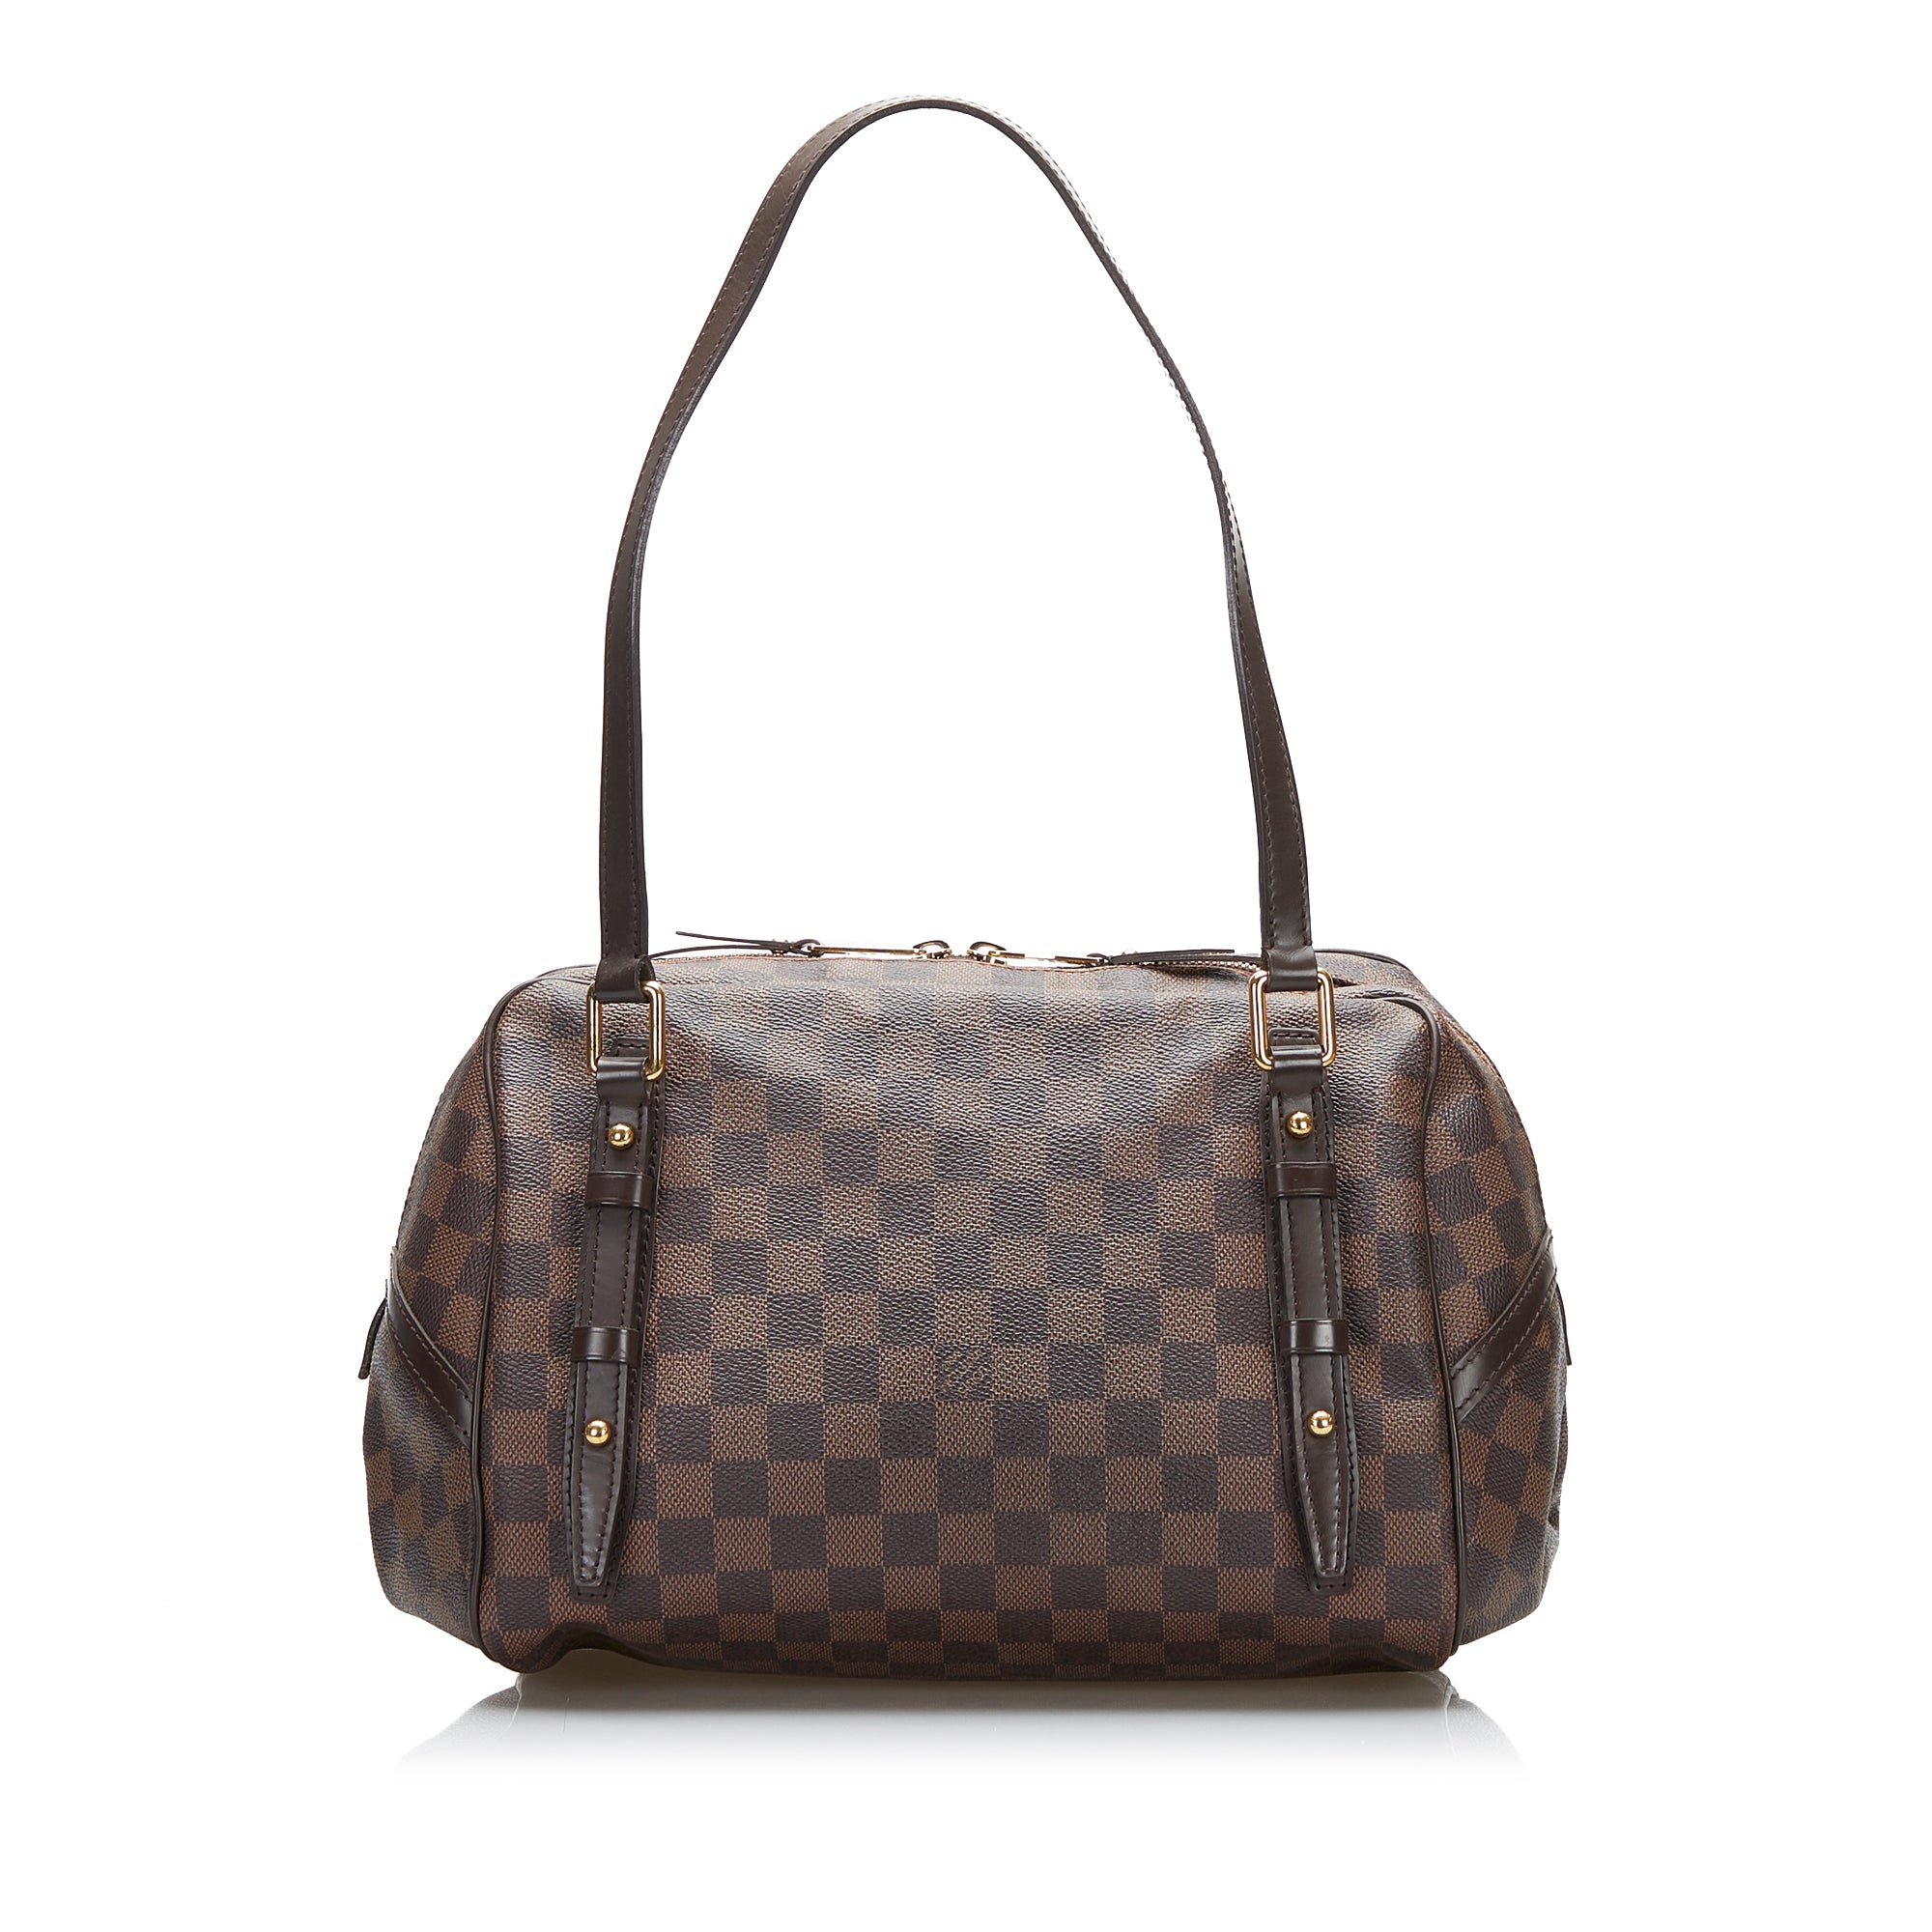 Louis Vuitton Rivington PM Damier Ebene Canvas Shoulder Bag on SALE